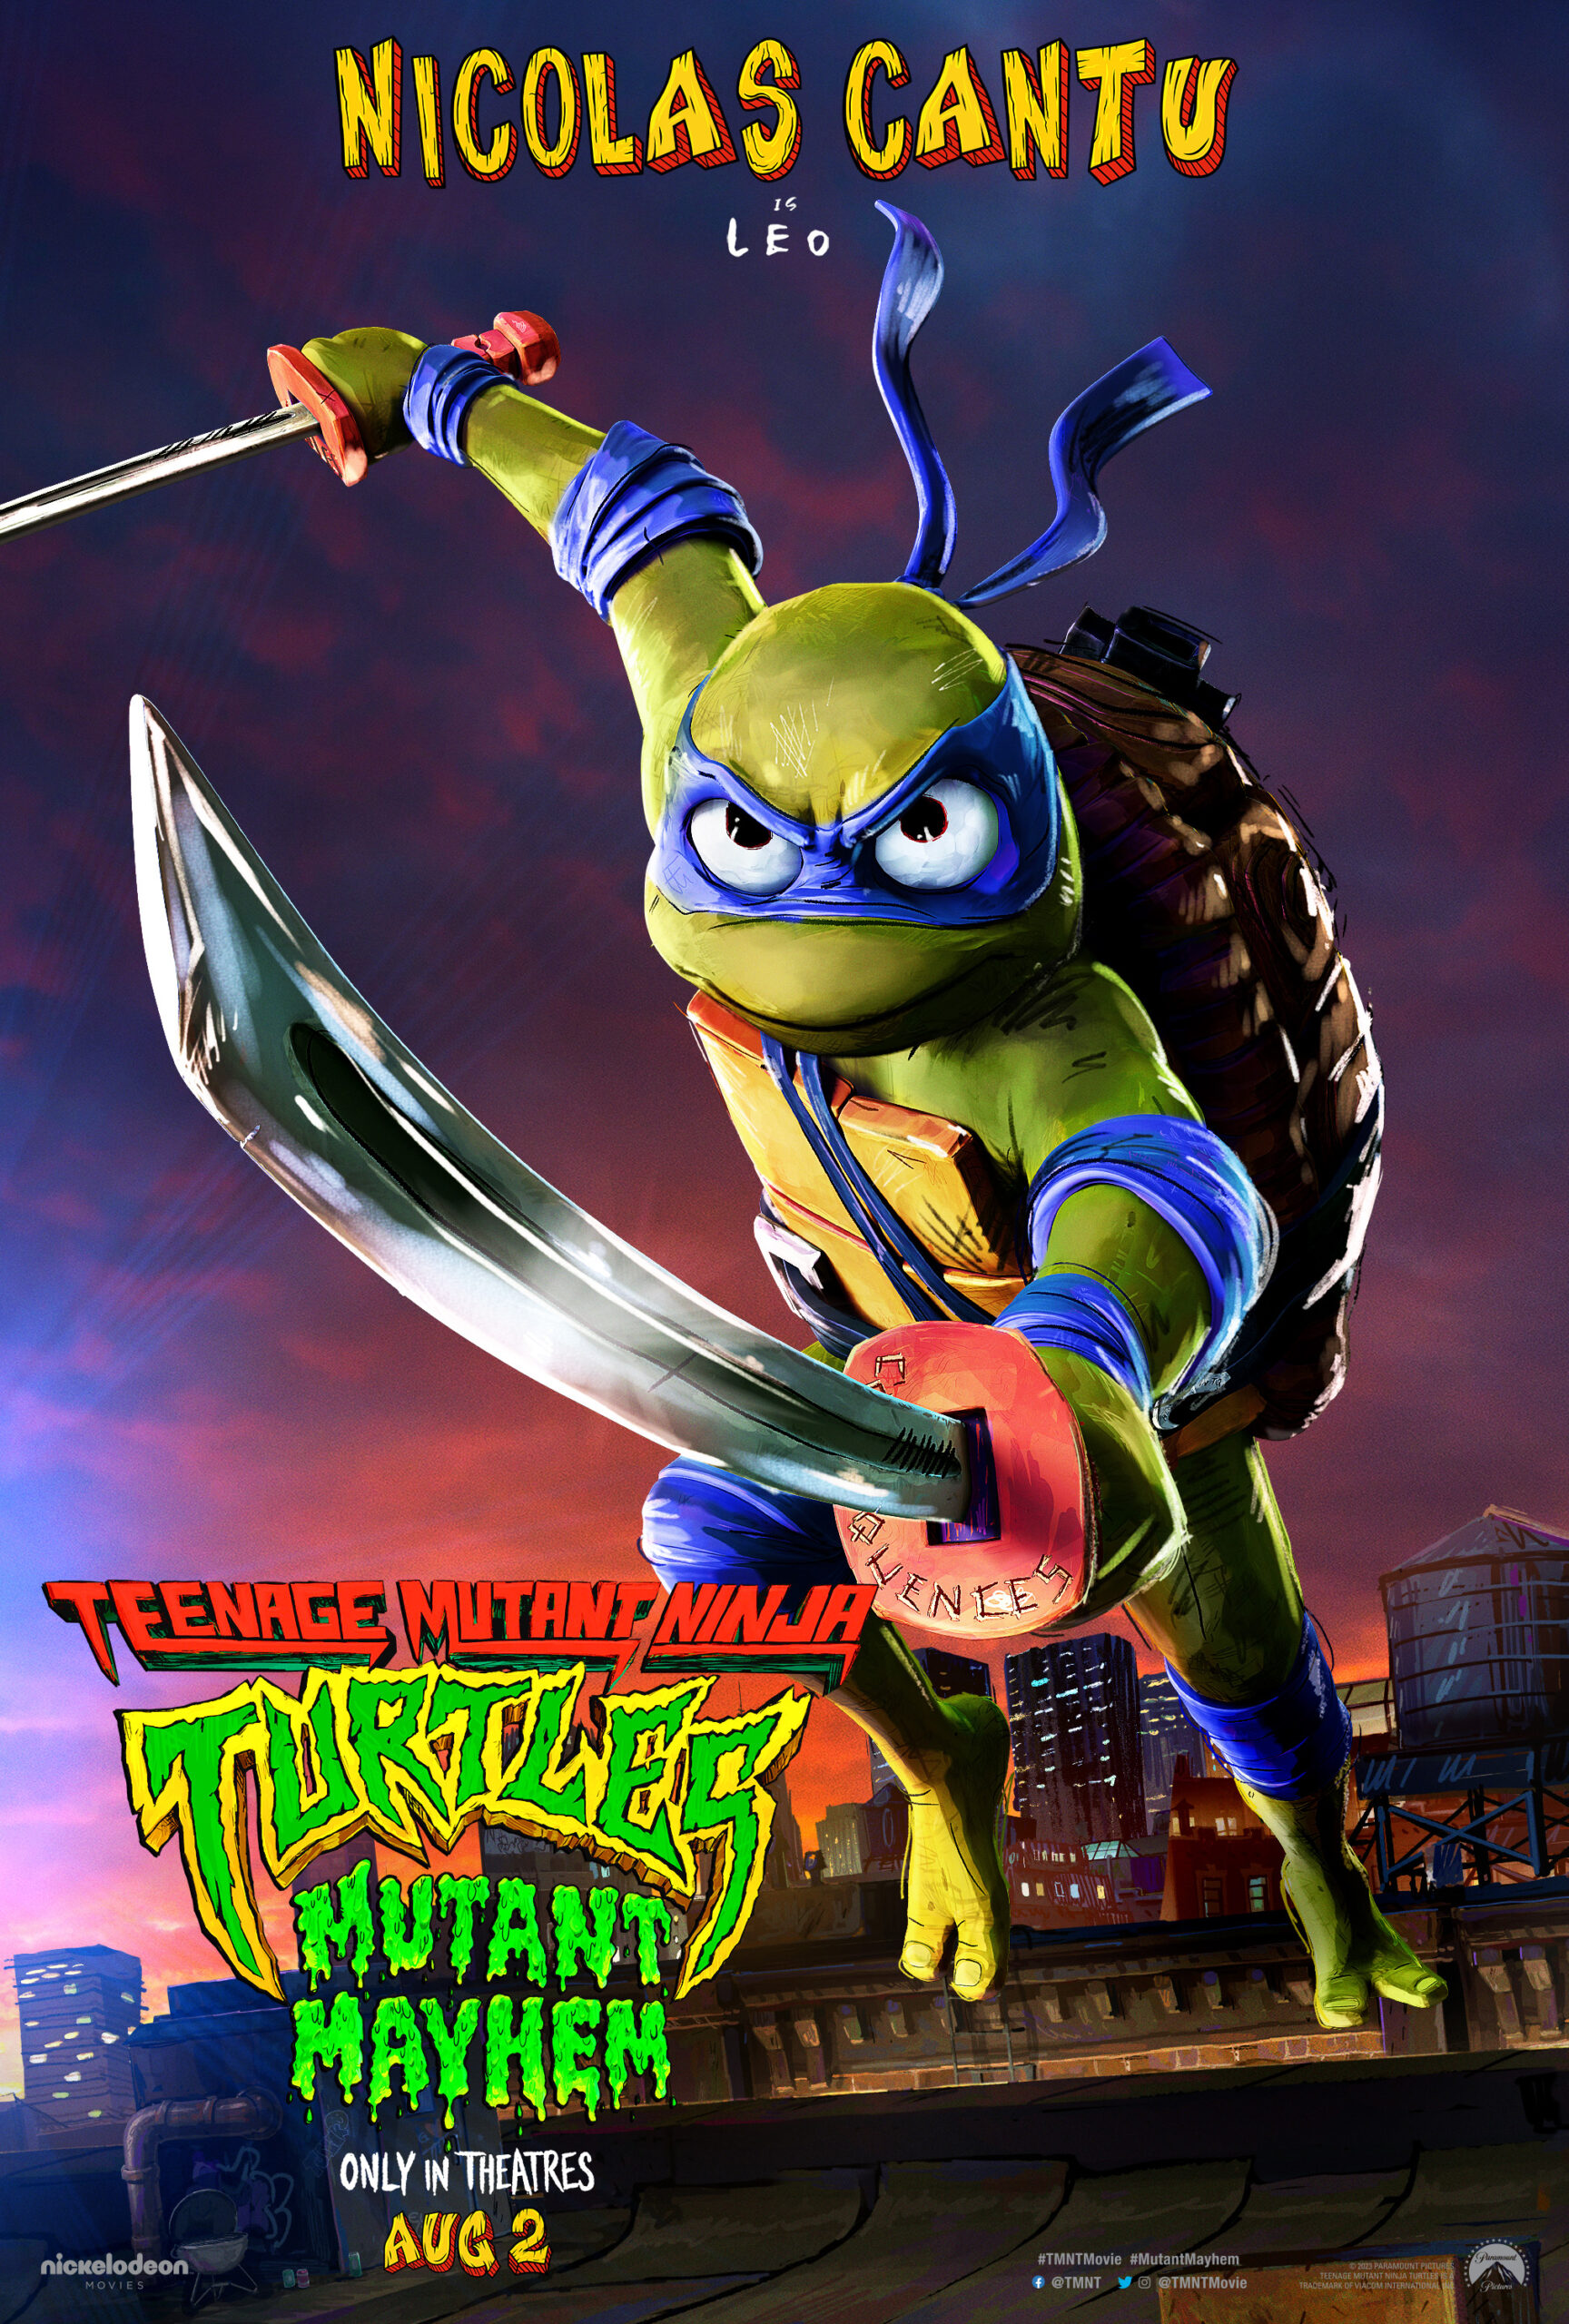 Seth Rogen did Teenage Mutant Ninja Turtles because Marvel scares him -  Polygon